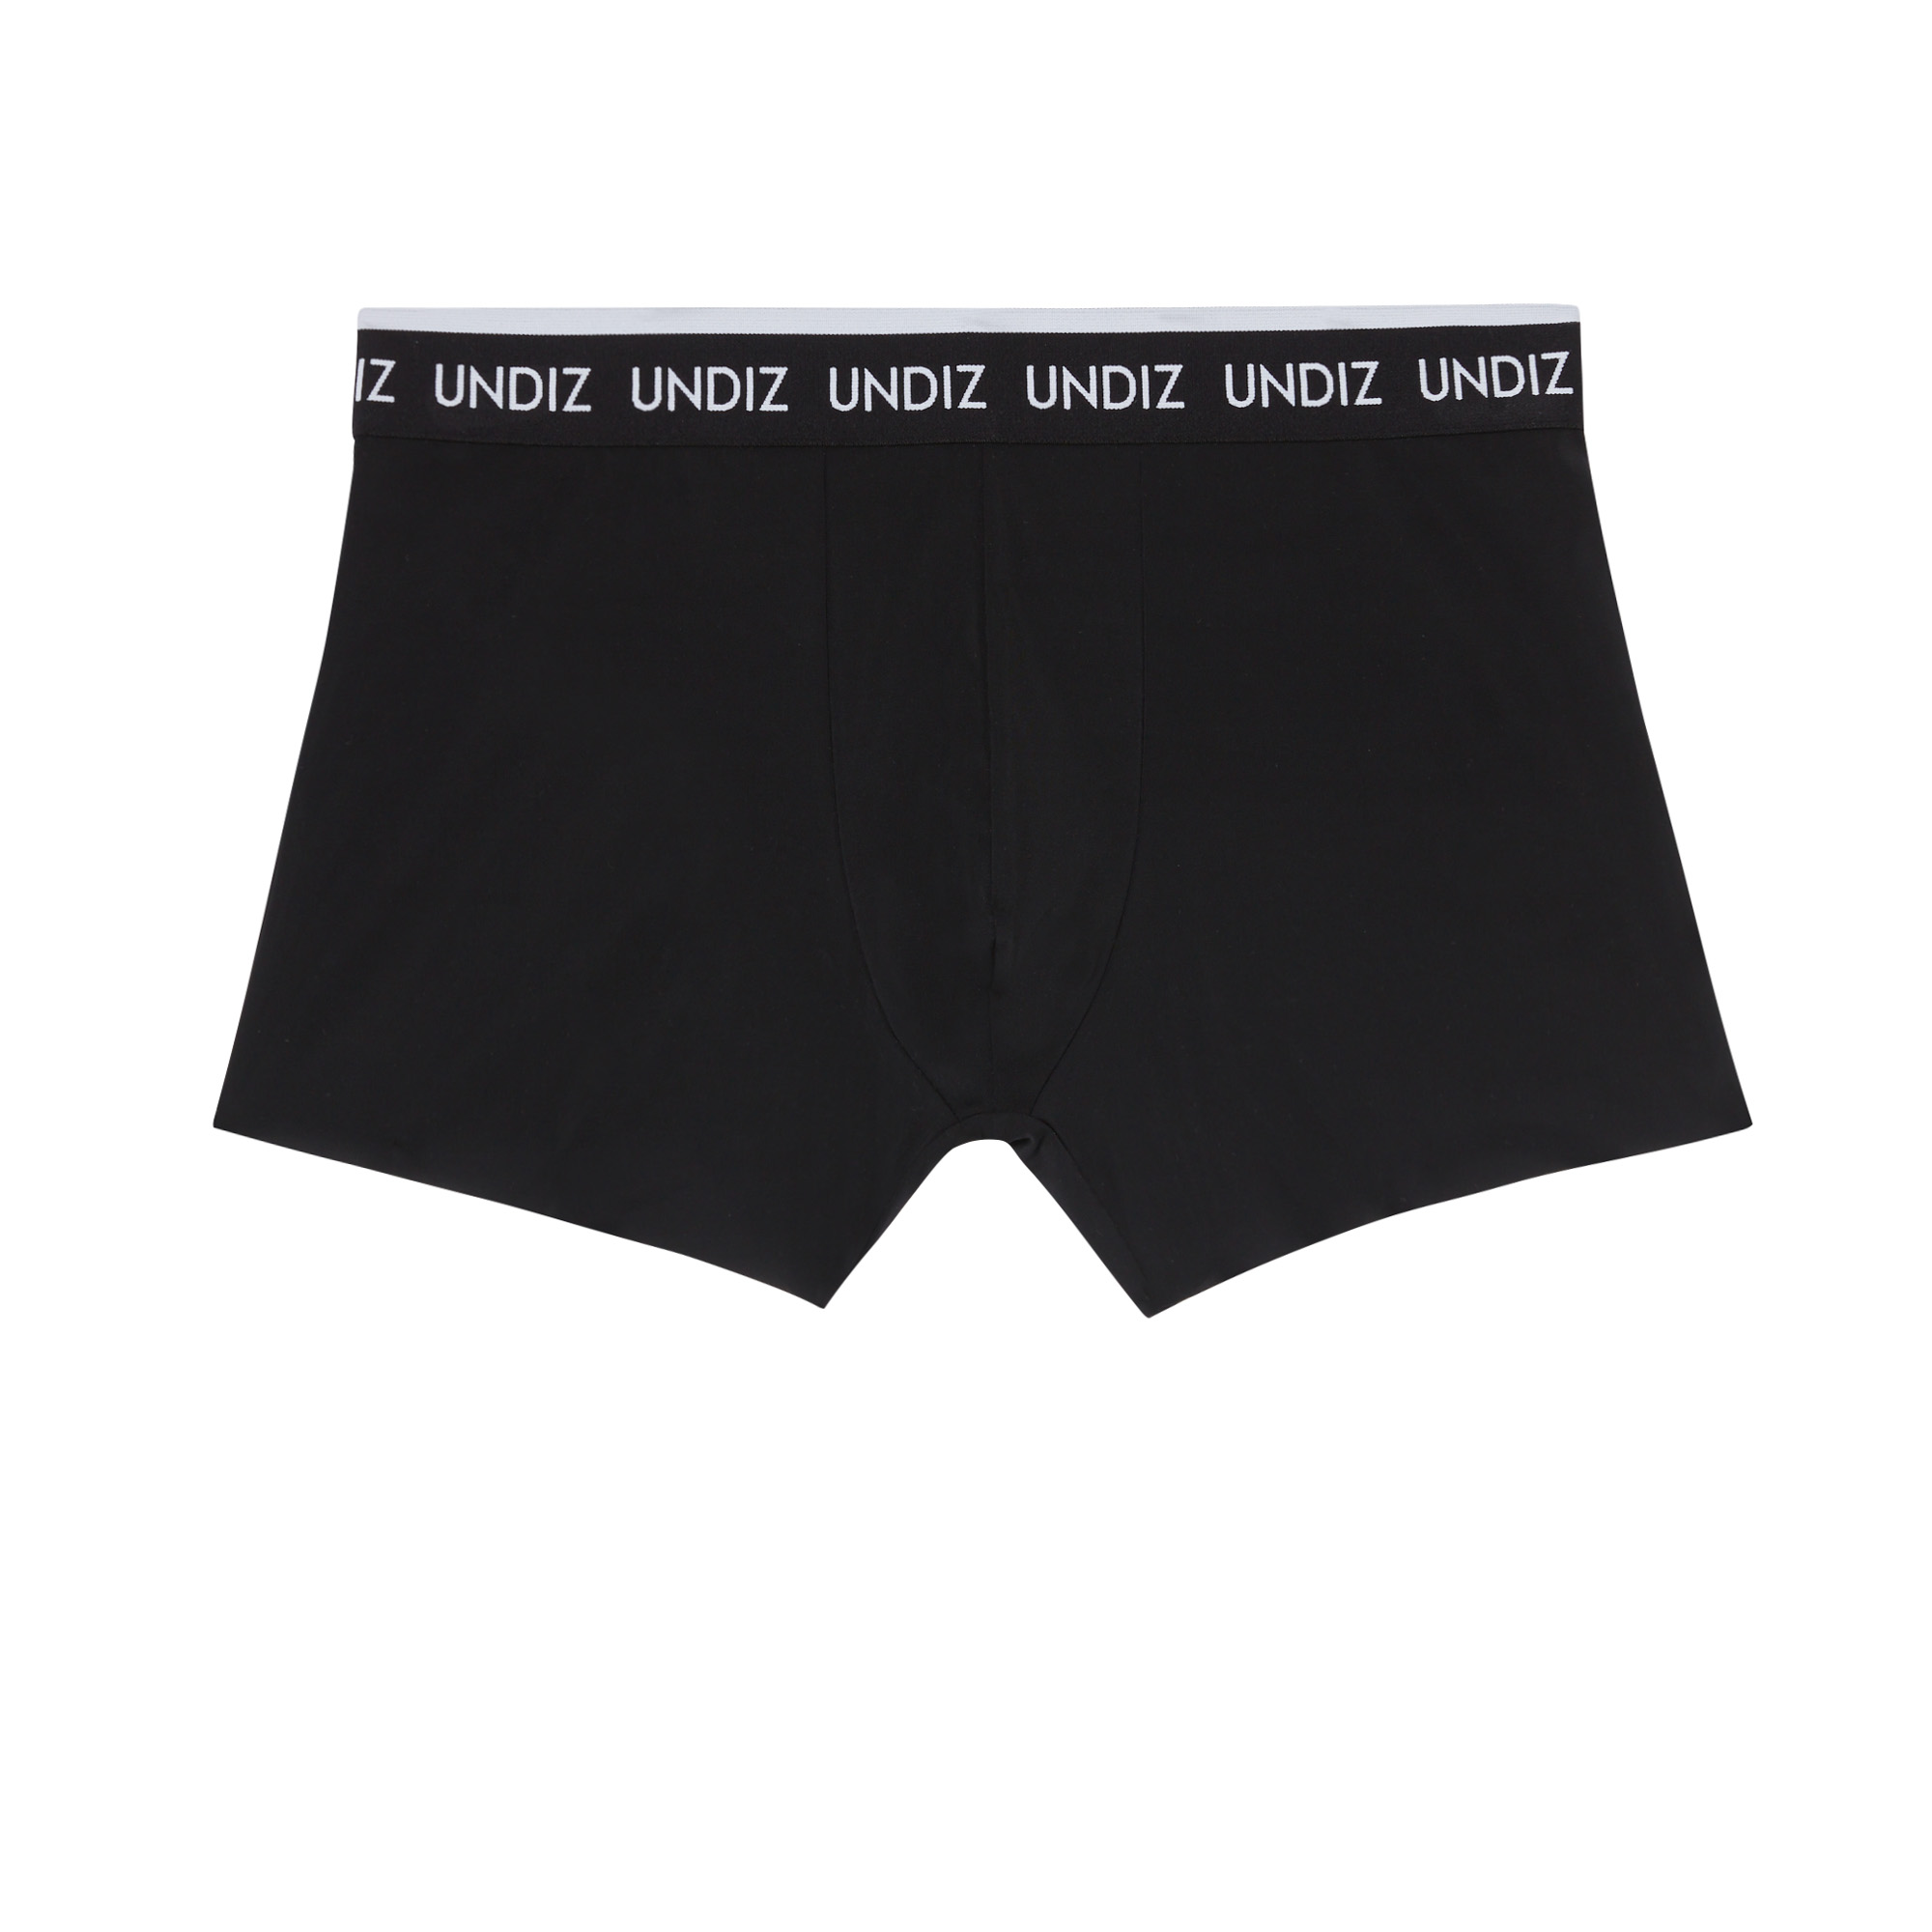 High-waisted period underwear - black - Undiz